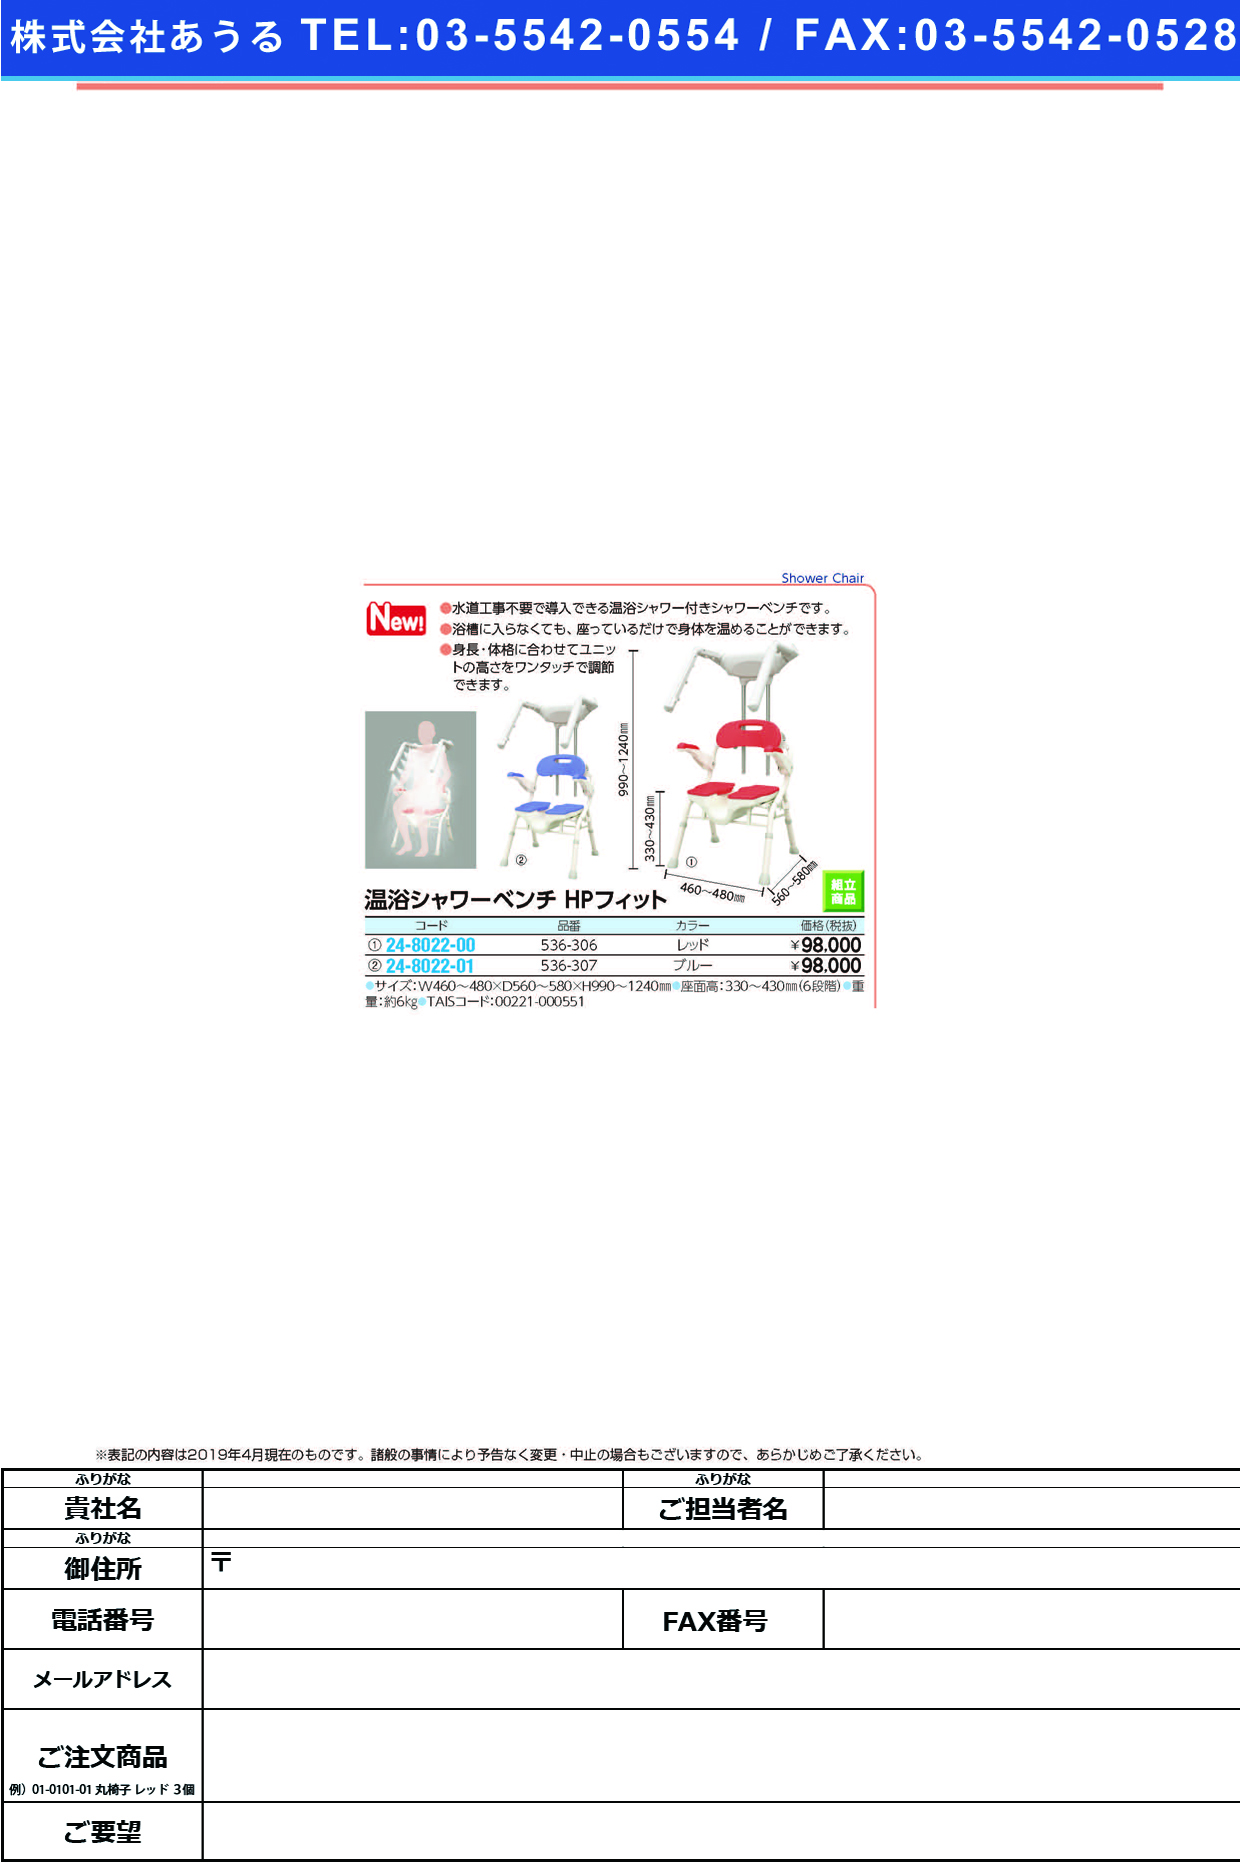 (24-8022-01)温浴シャワーベンチＨＰフィット536-307(ﾌﾞﾙｰ) ｵﾝﾖｸｼｬﾜｰﾍﾞﾝﾁHPﾌｨｯﾄ(アロン化成)【1台単位】【2019年カタログ商品】